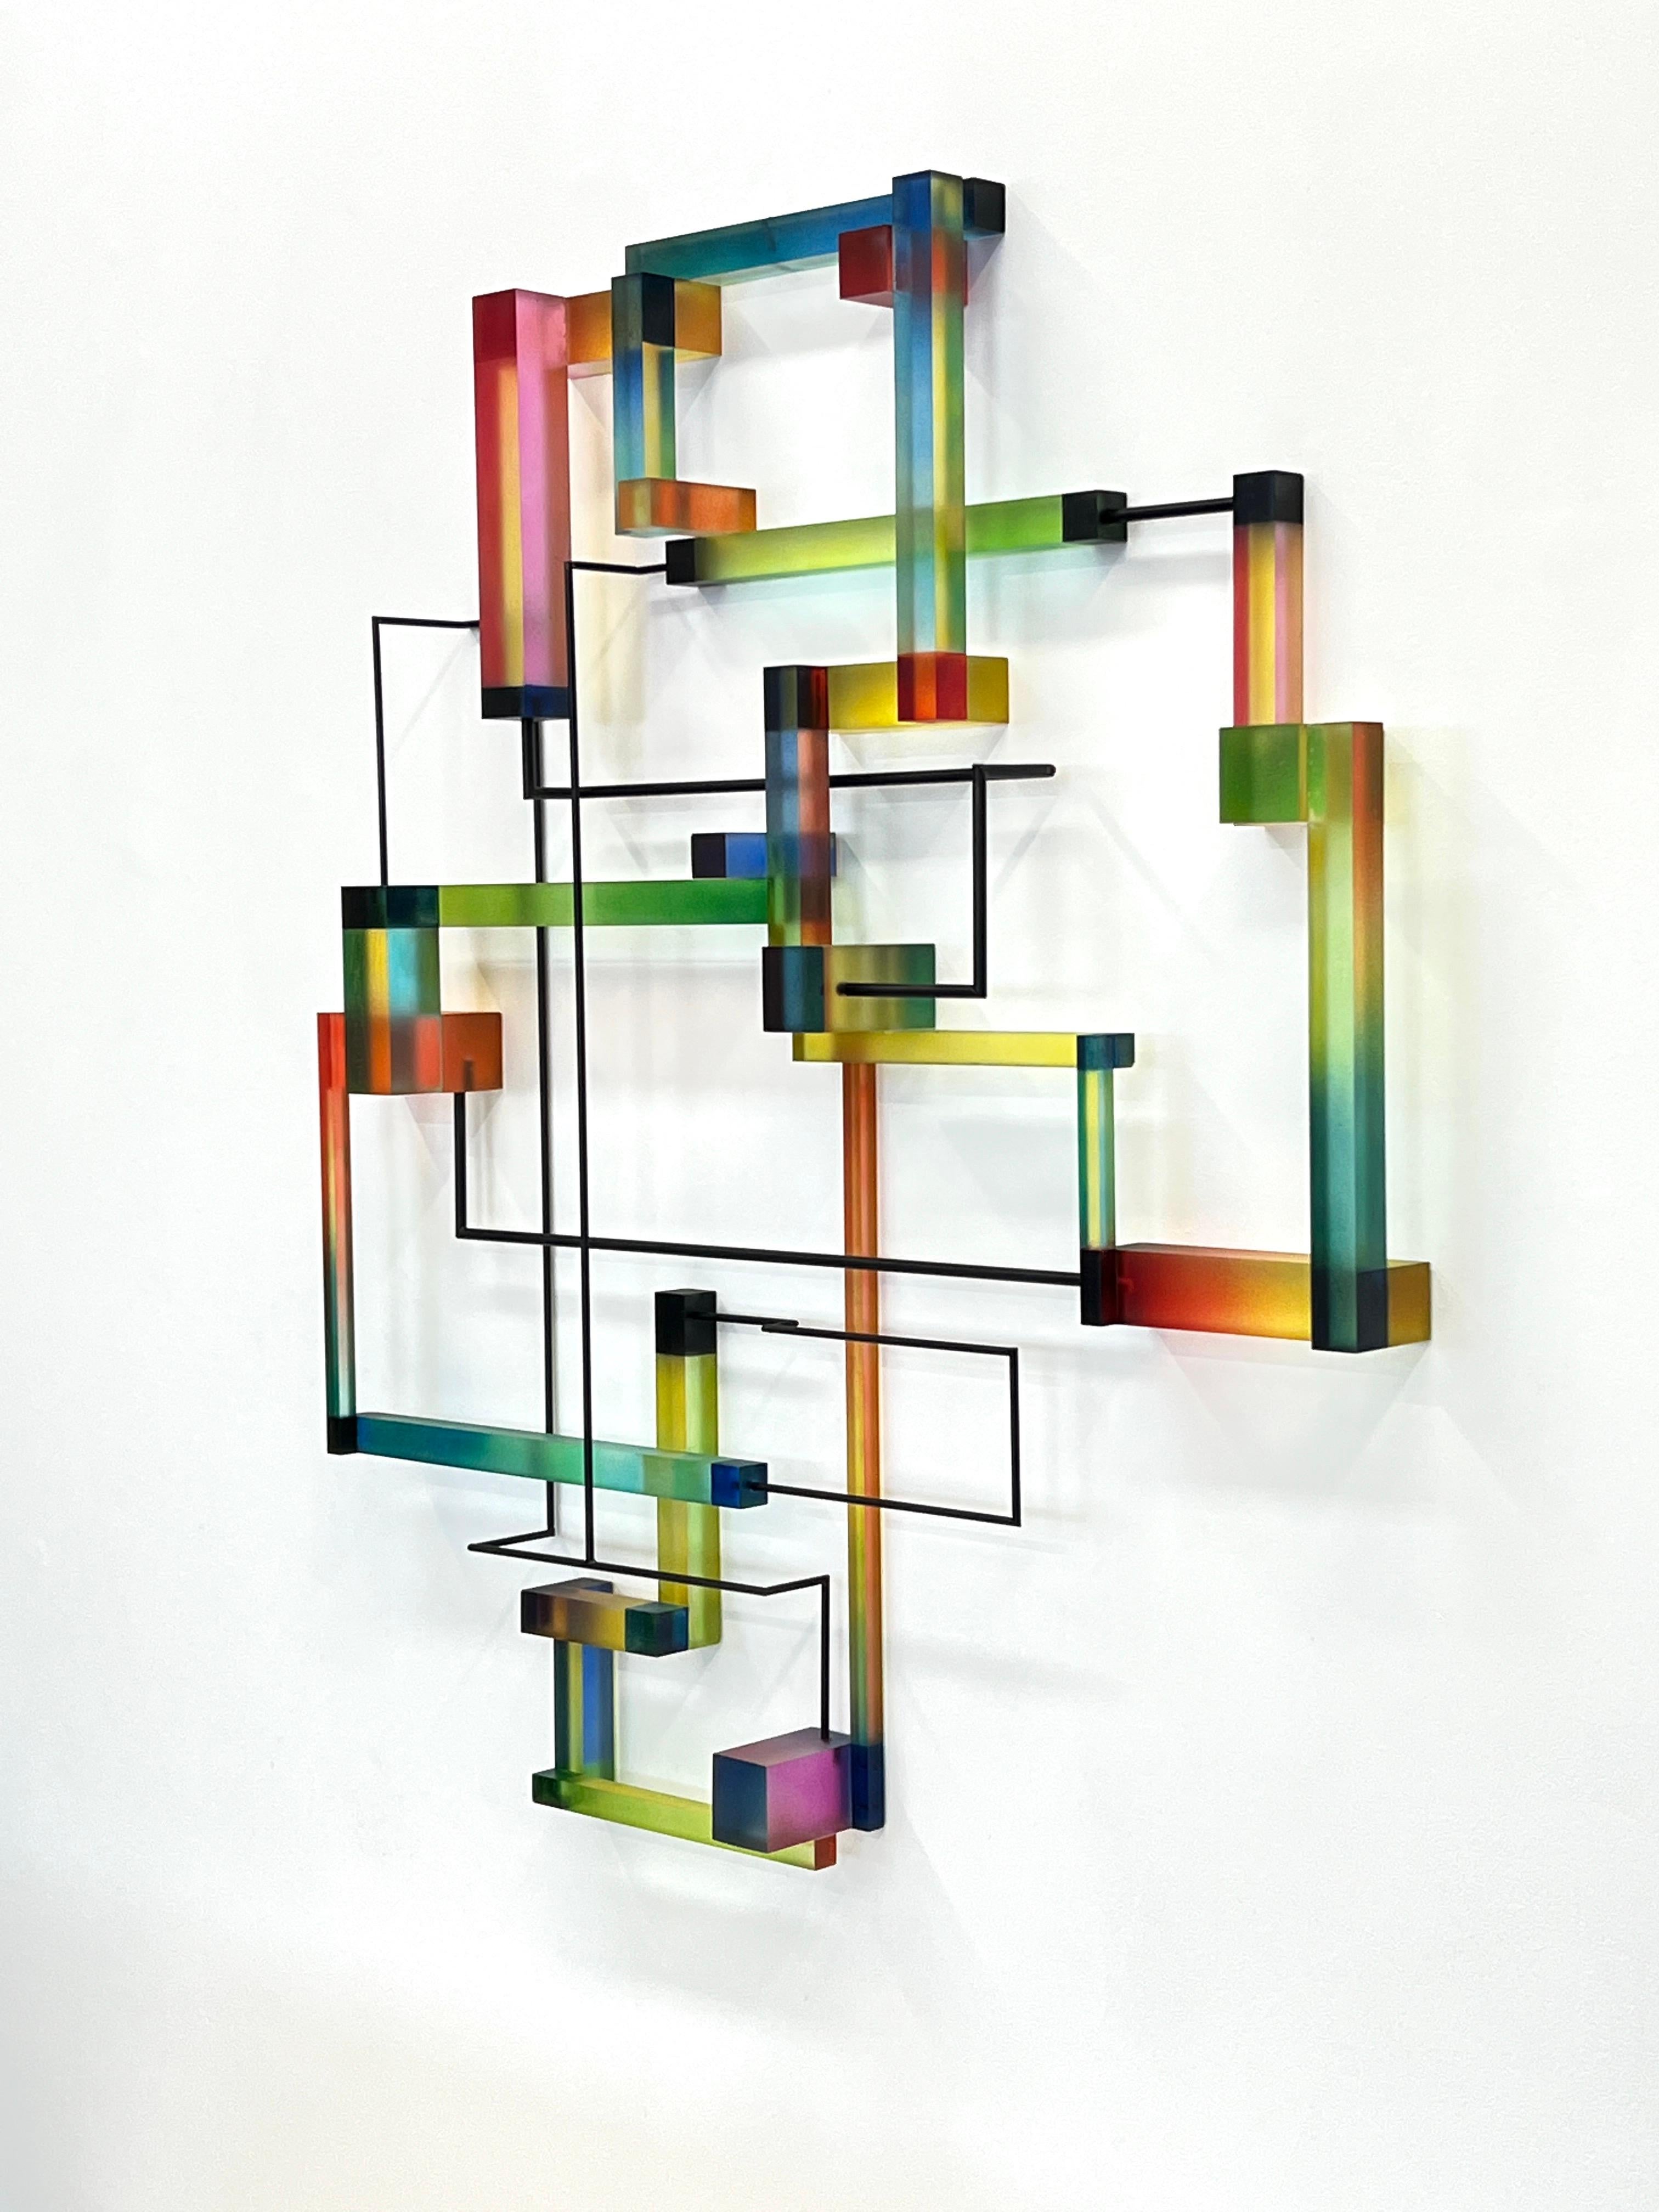 Valadon : sculpture géométrique abstraite moderne contemporaine - Sculpture de Greg Chann